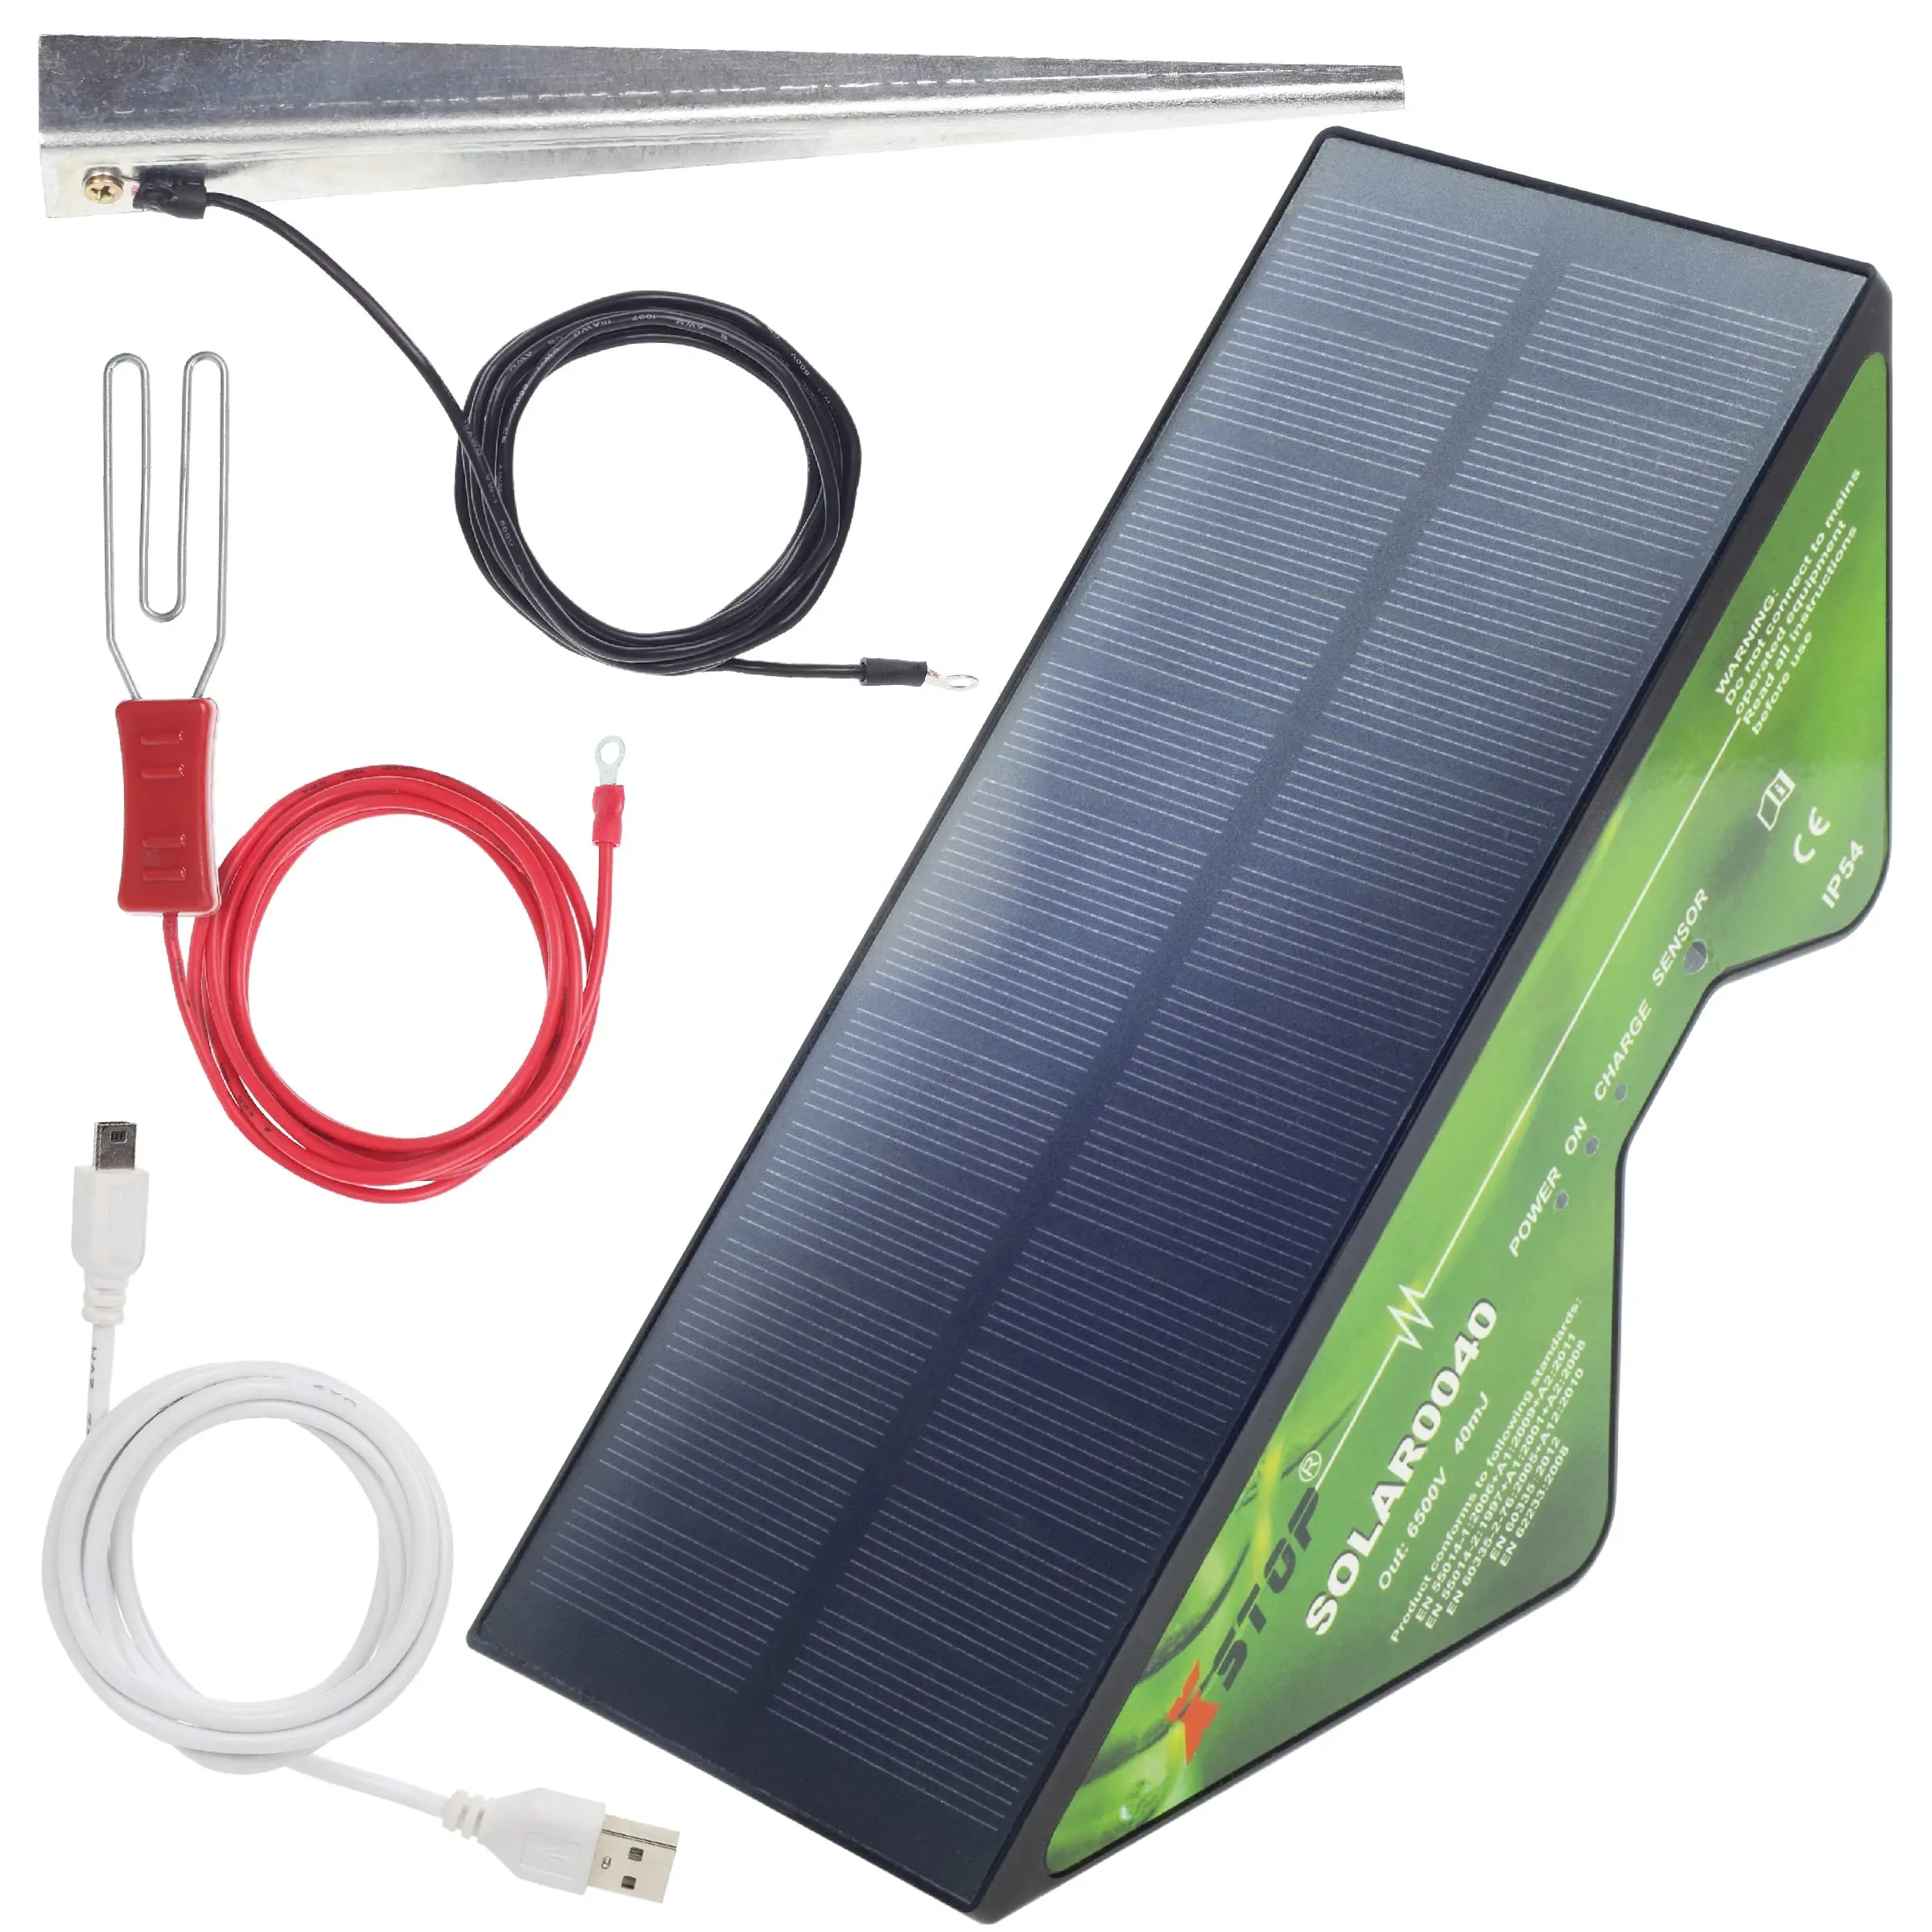 태양열 전기 울타리 에너자이저 X-Stop2 km 범위 전체 키트 지구 스테이크 및 모든 리드 플러스 USB 충전 케이블 포함